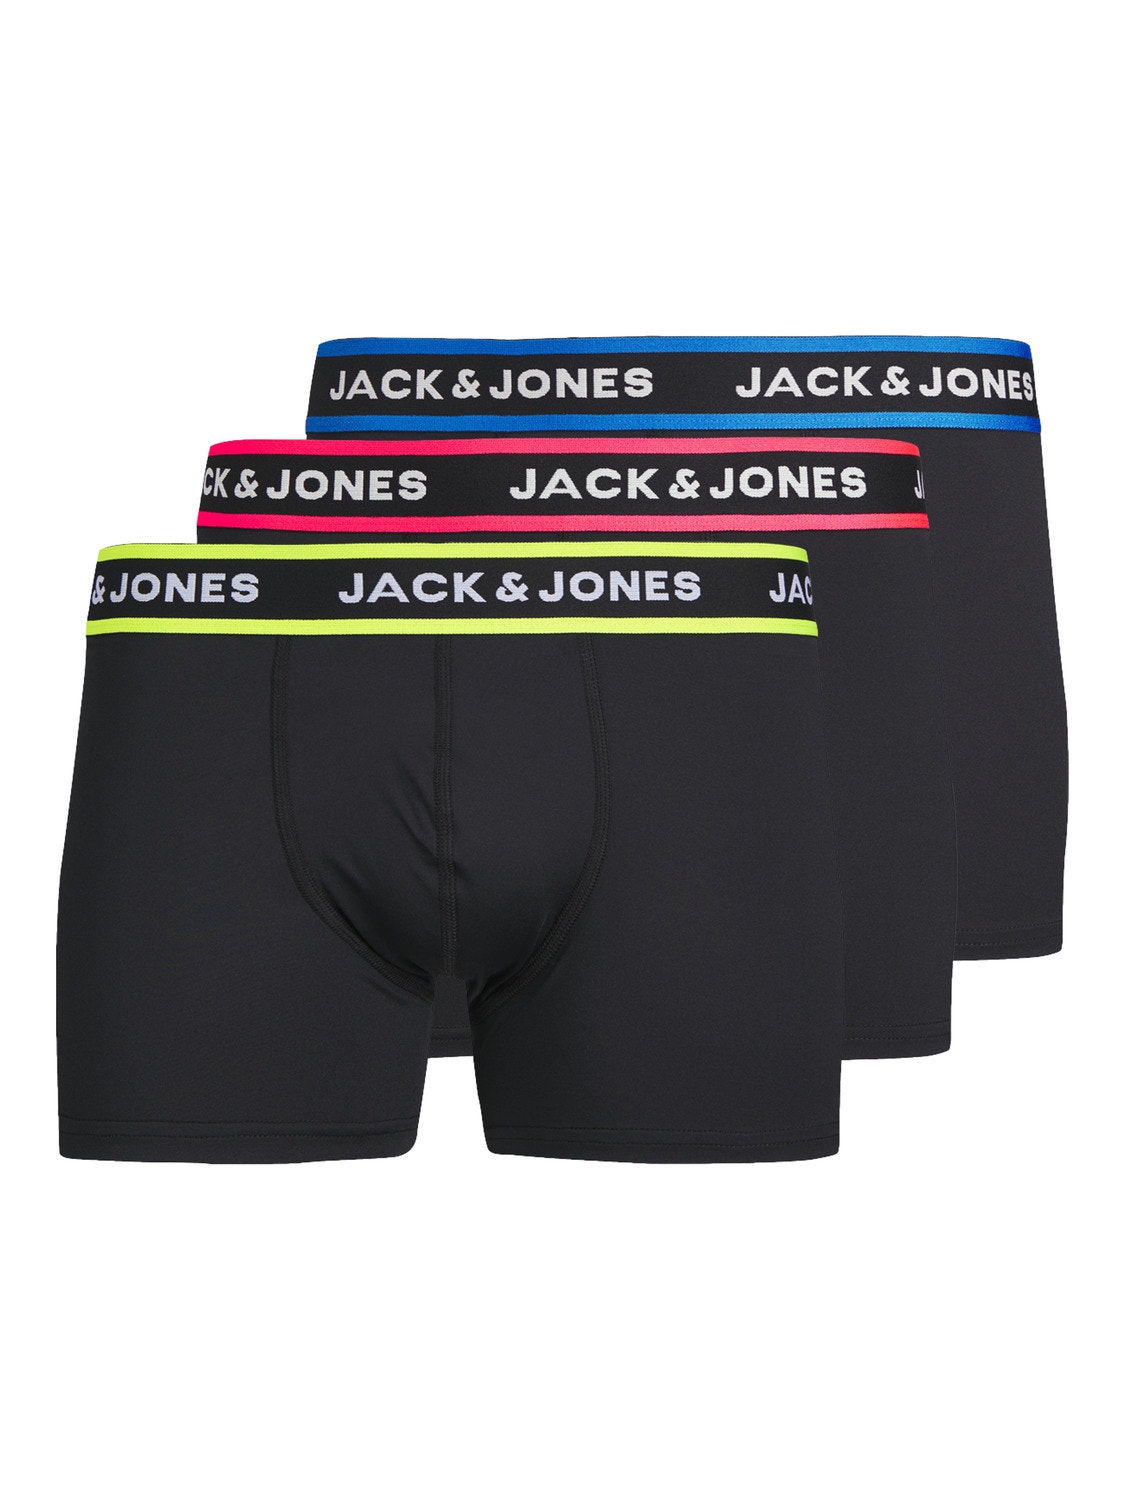 Jack & Jones 3-pack Trunks -Black - 12252655